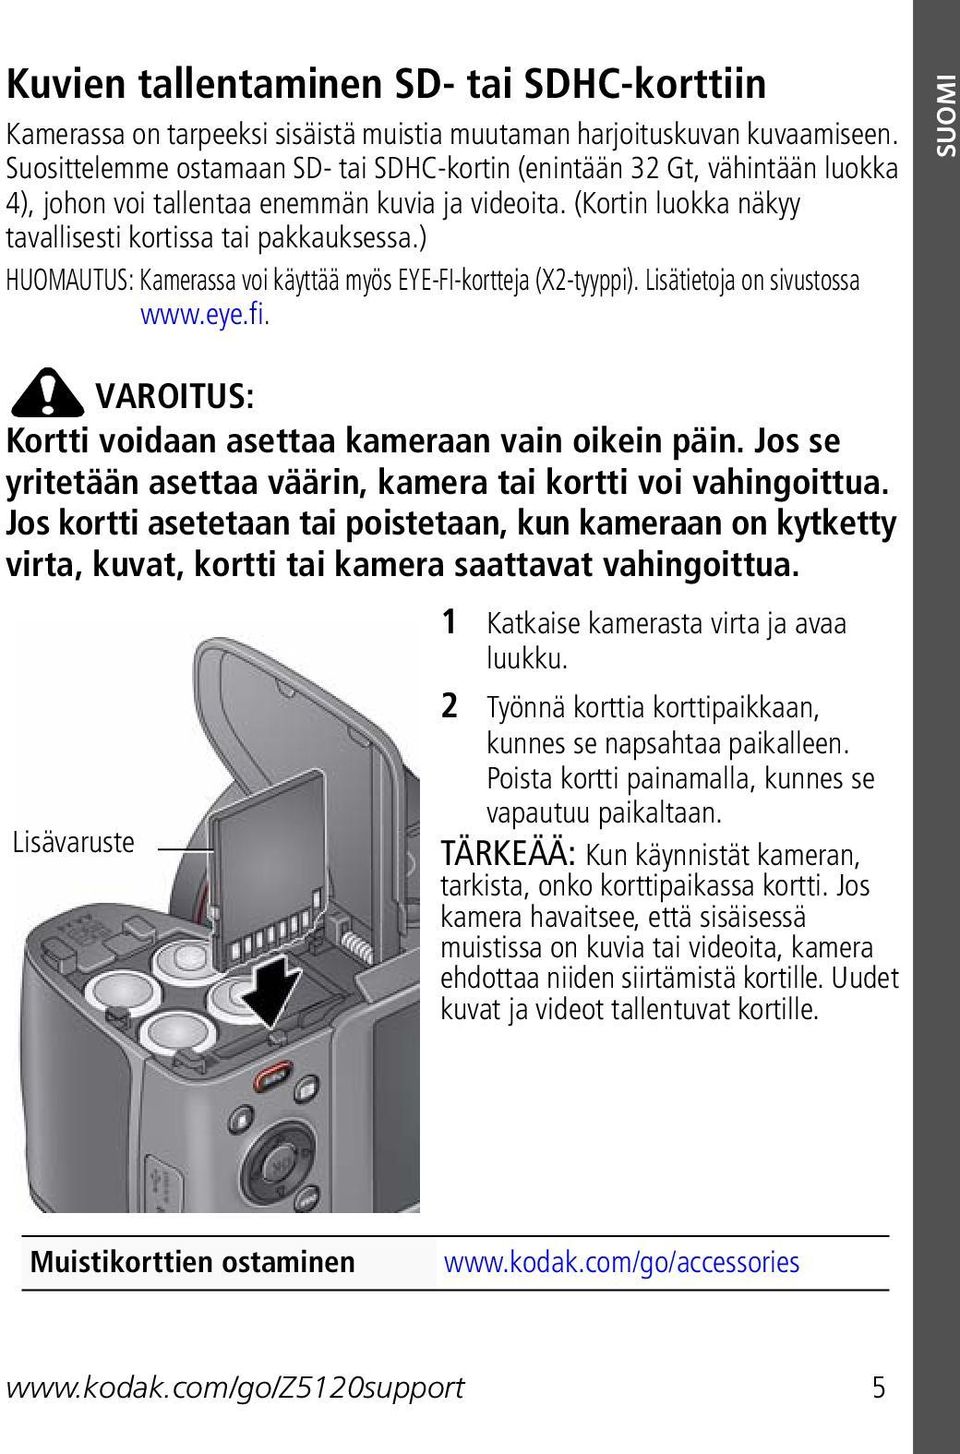 ) HUOMAUTUS: Kamerassa voi käyttää myös EYE-FI-kortteja (X2-tyyppi). Lisätietoja on sivustossa www.eye.fi. SUOMI VAROITUS: Kortti voidaan asettaa kameraan vain oikein päin.